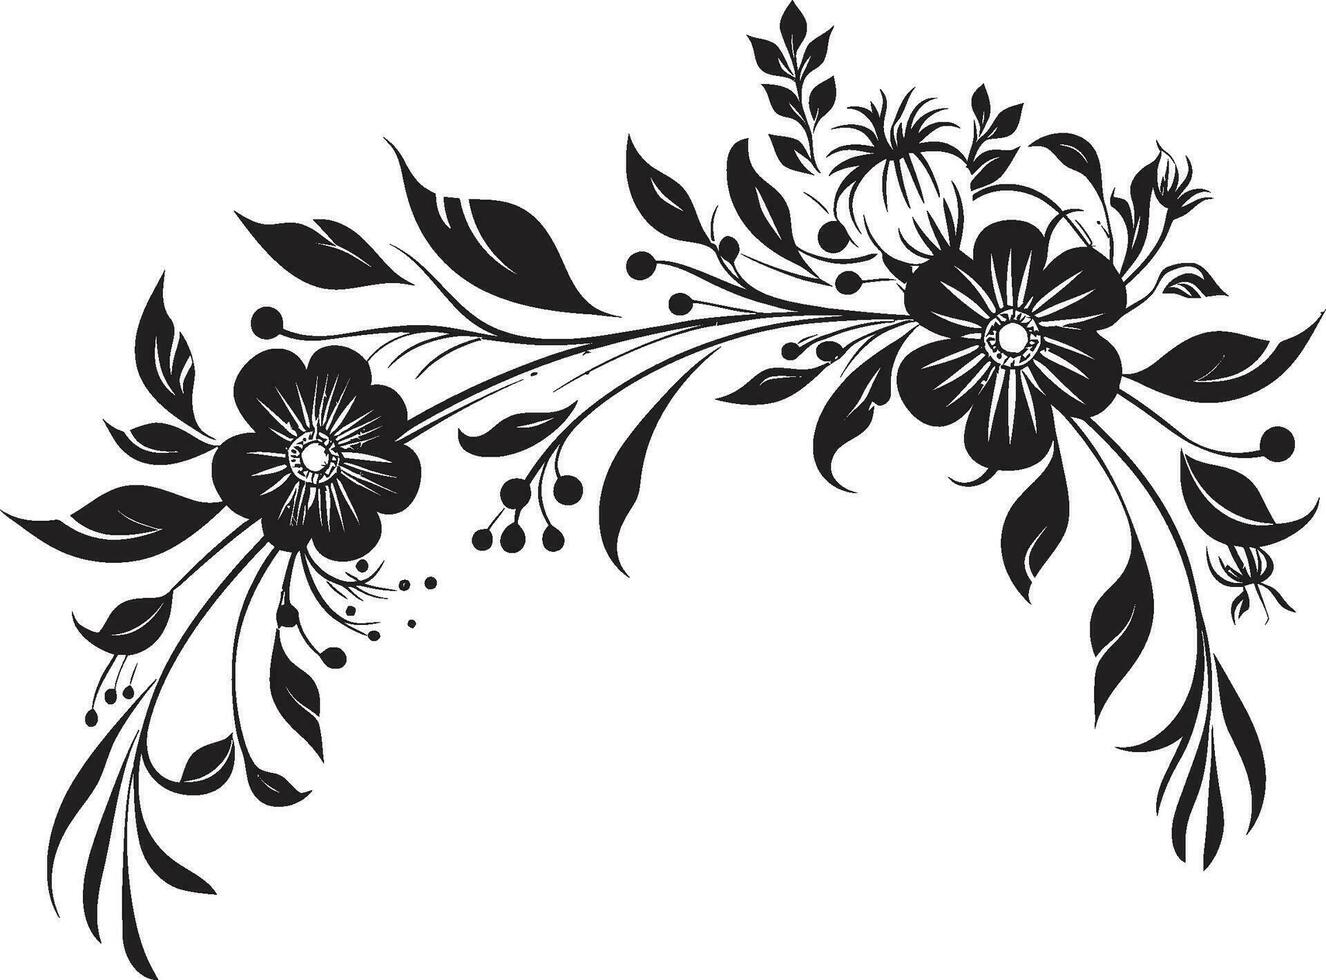 gefertigt Botanik Hand gezeichnet schwarz Symbol Logo künstlerisch Flora Hand gezeichnet schwarz Vektor Emblem